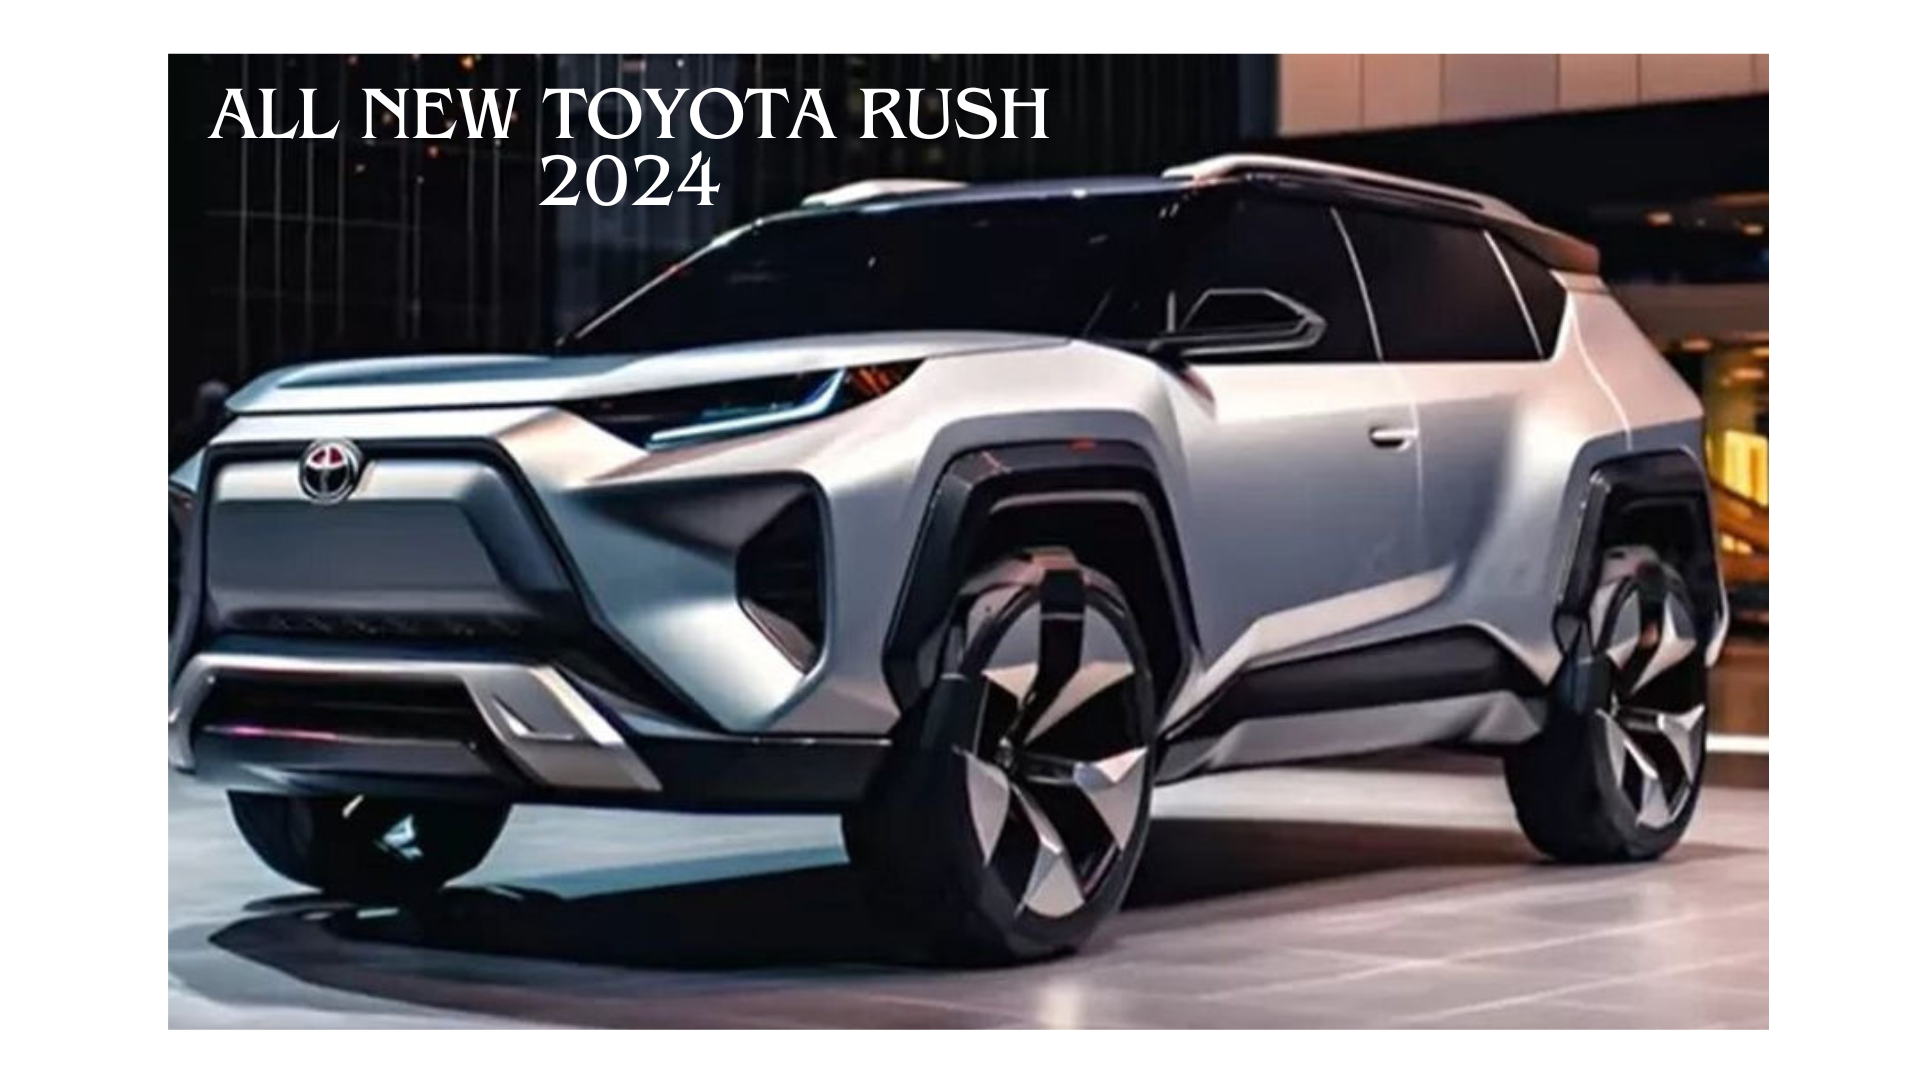 All New Toyota Rush 2024, Revolusi Berkendara dengan Mesin Terbaru Hybrid dan Desain yang Ciamik